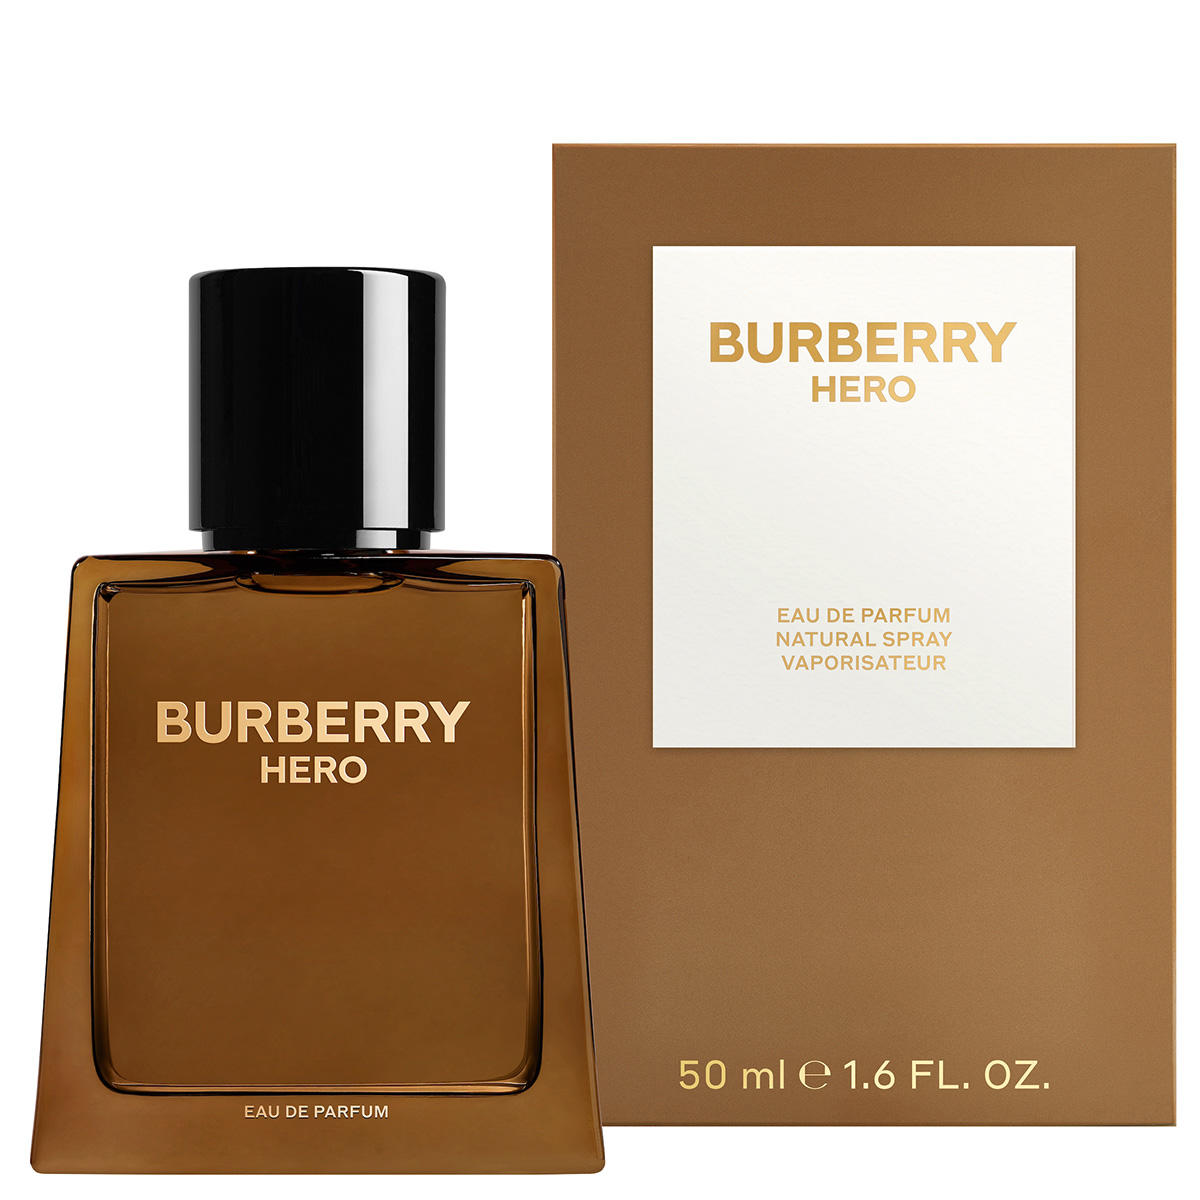 BURBERRY HERO Eau de Parfum 50 ml - 2